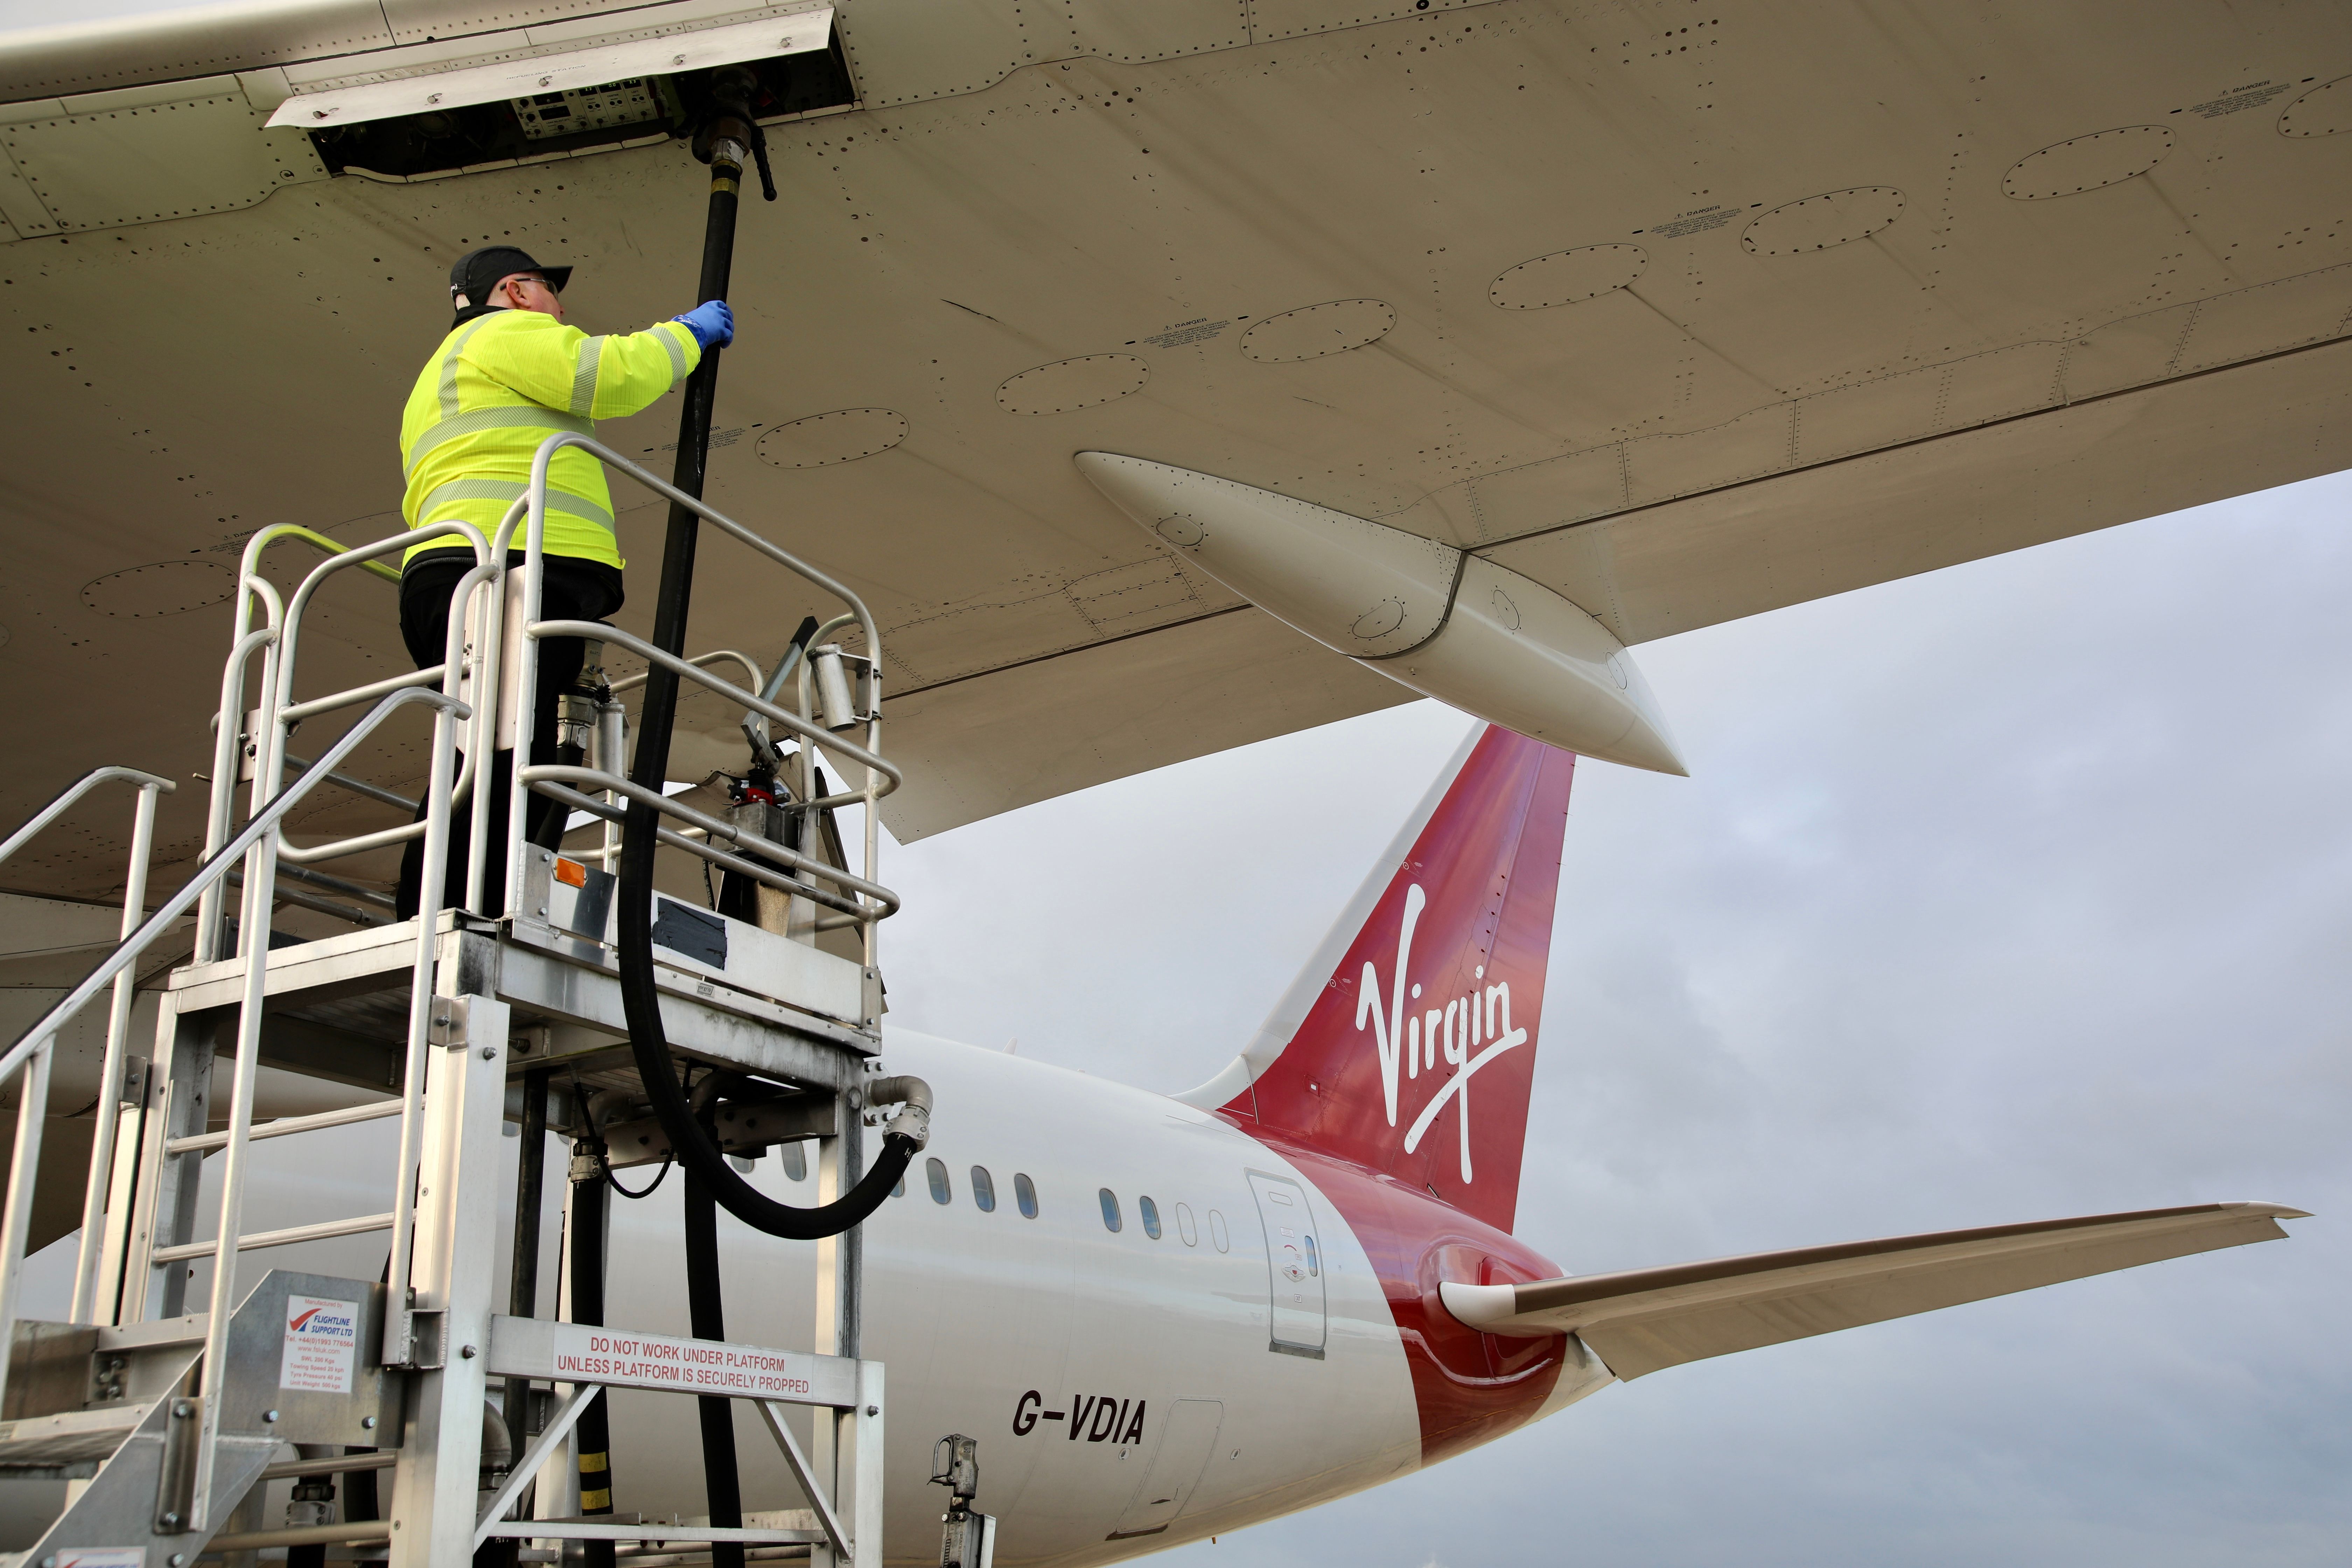 Virgin Atlantic Boeing 787 Taking On Fuel